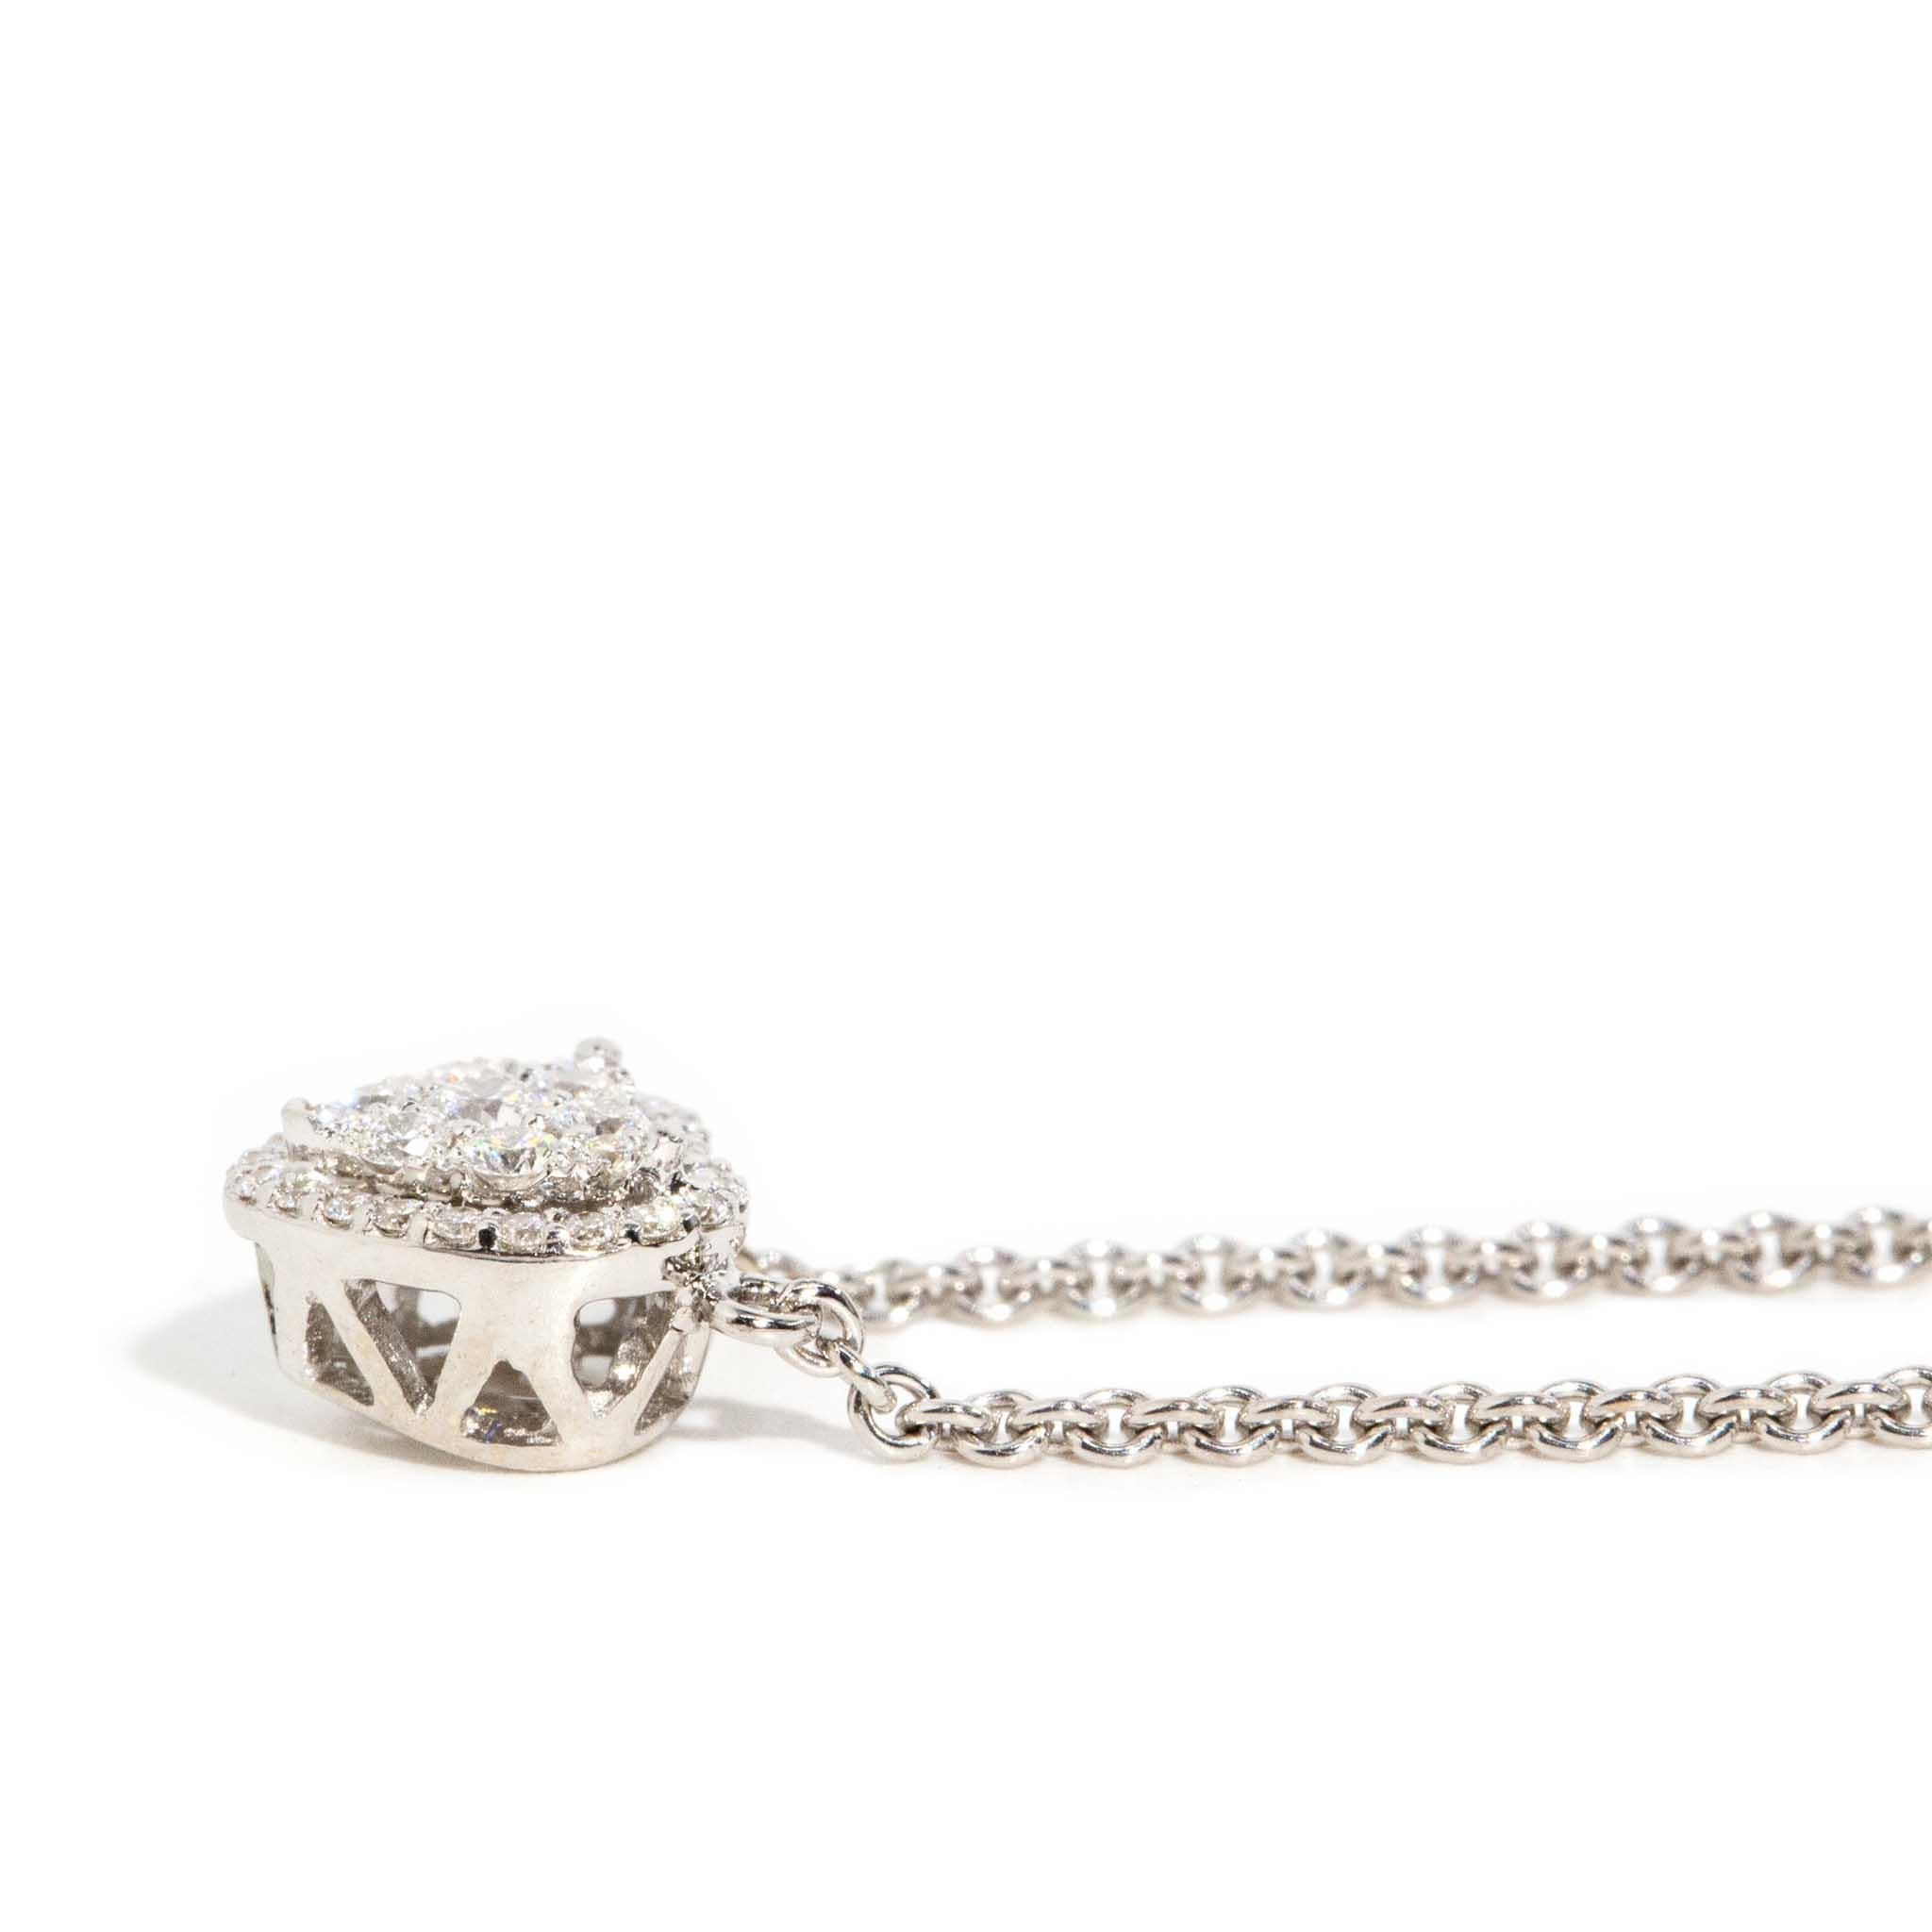 Contemporary Brilliant Diamond Heart Pendant & Cable Chain 18 Carat White Gold In Good Condition For Sale In Hamilton, AU